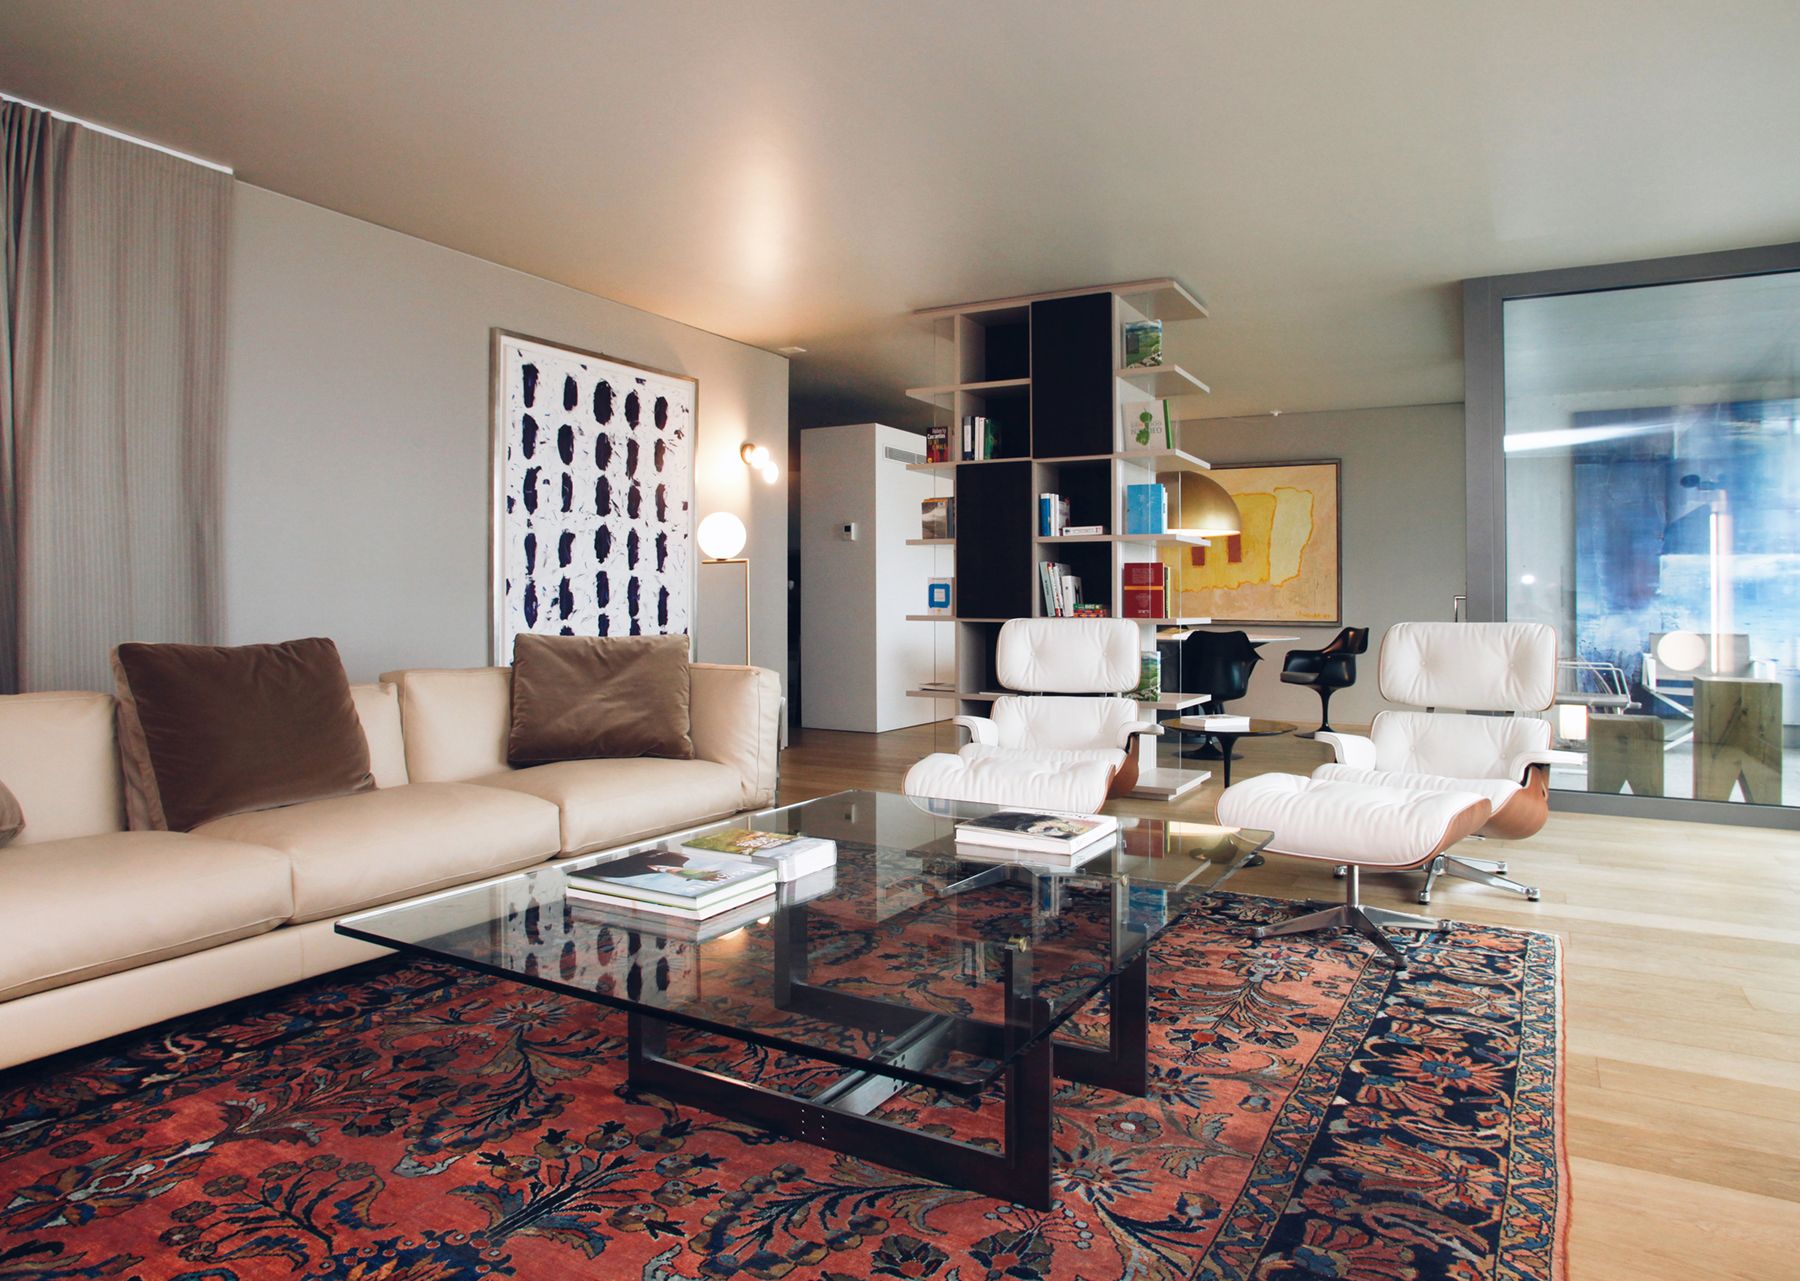 Appartamento a Lugano, Progetto di interni, 220mq

Cliente privato, 2019-2020